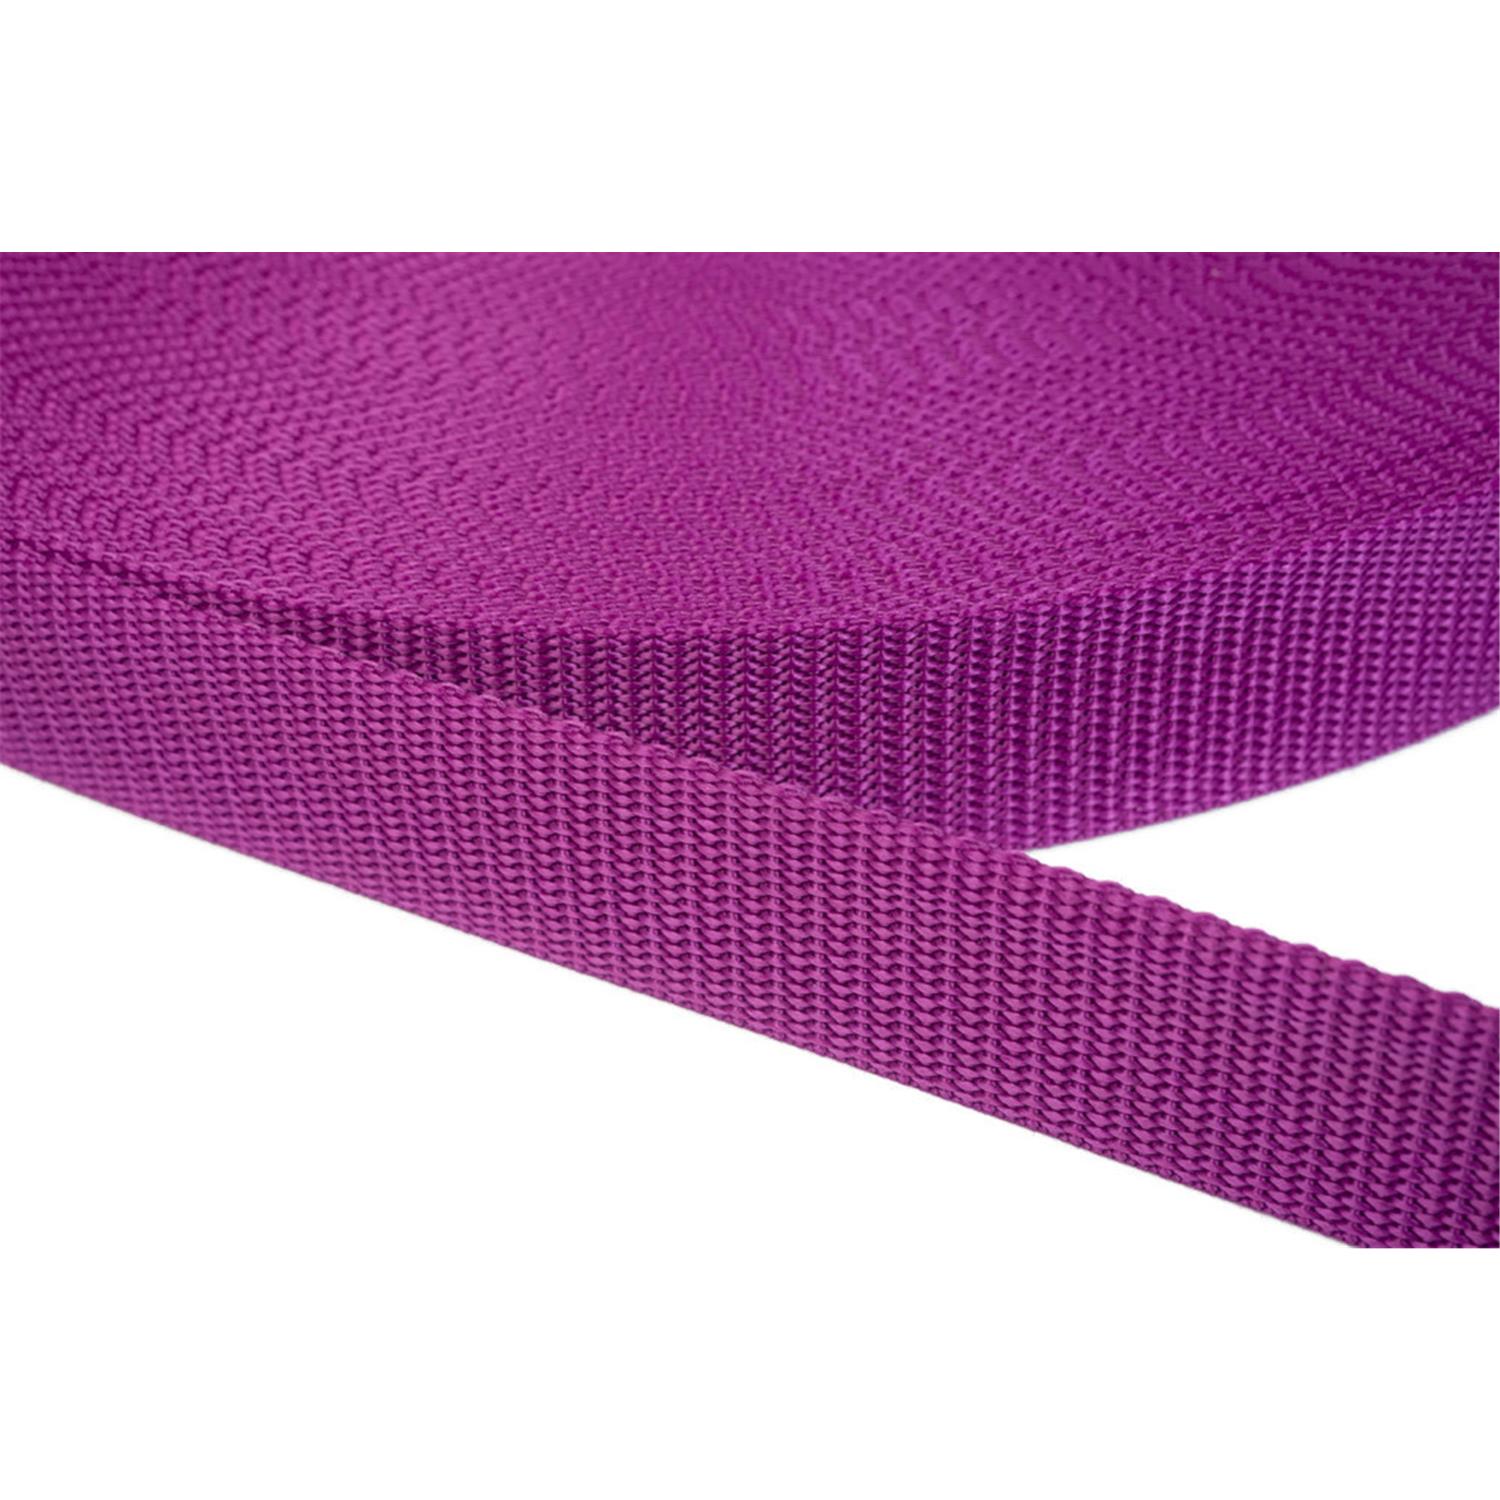 Gurtband 40mm breit aus Polypropylen in 41 Farben 22 - violettrot 12 Meter